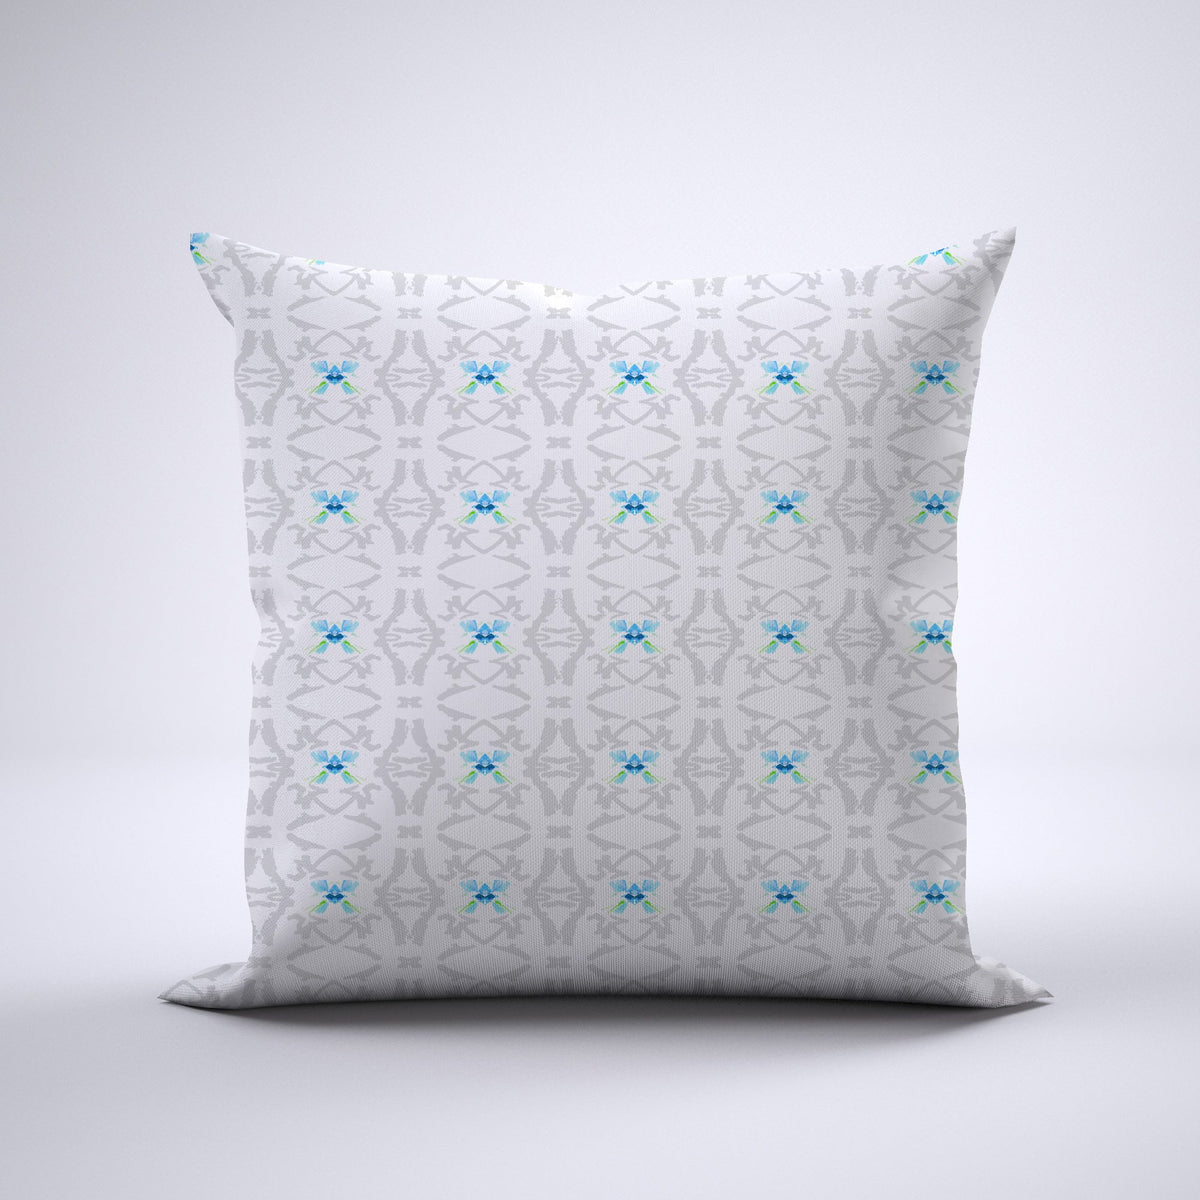 Throw Pillow - Flutter Blue Morpho Bedding Collections, Pillows, Throw Pillows MWW 